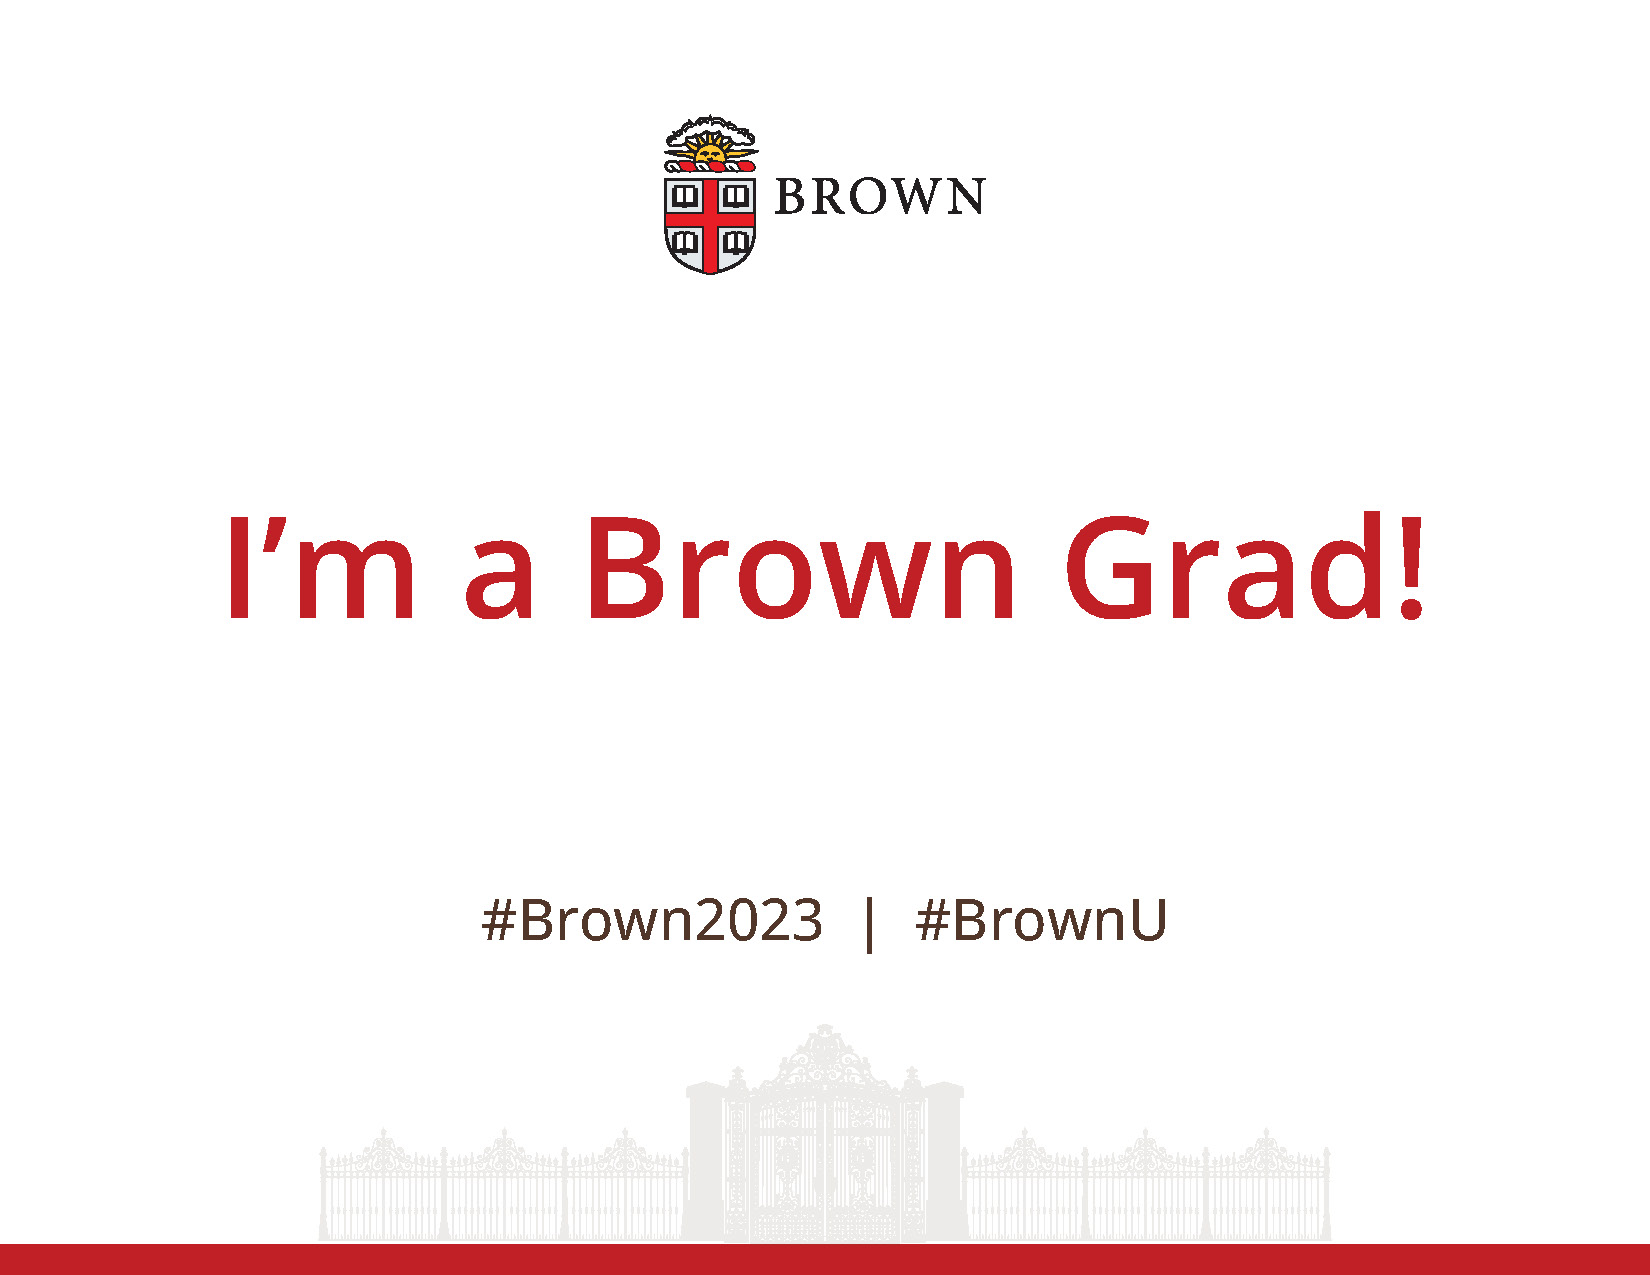 I'm a Brown Grad poster